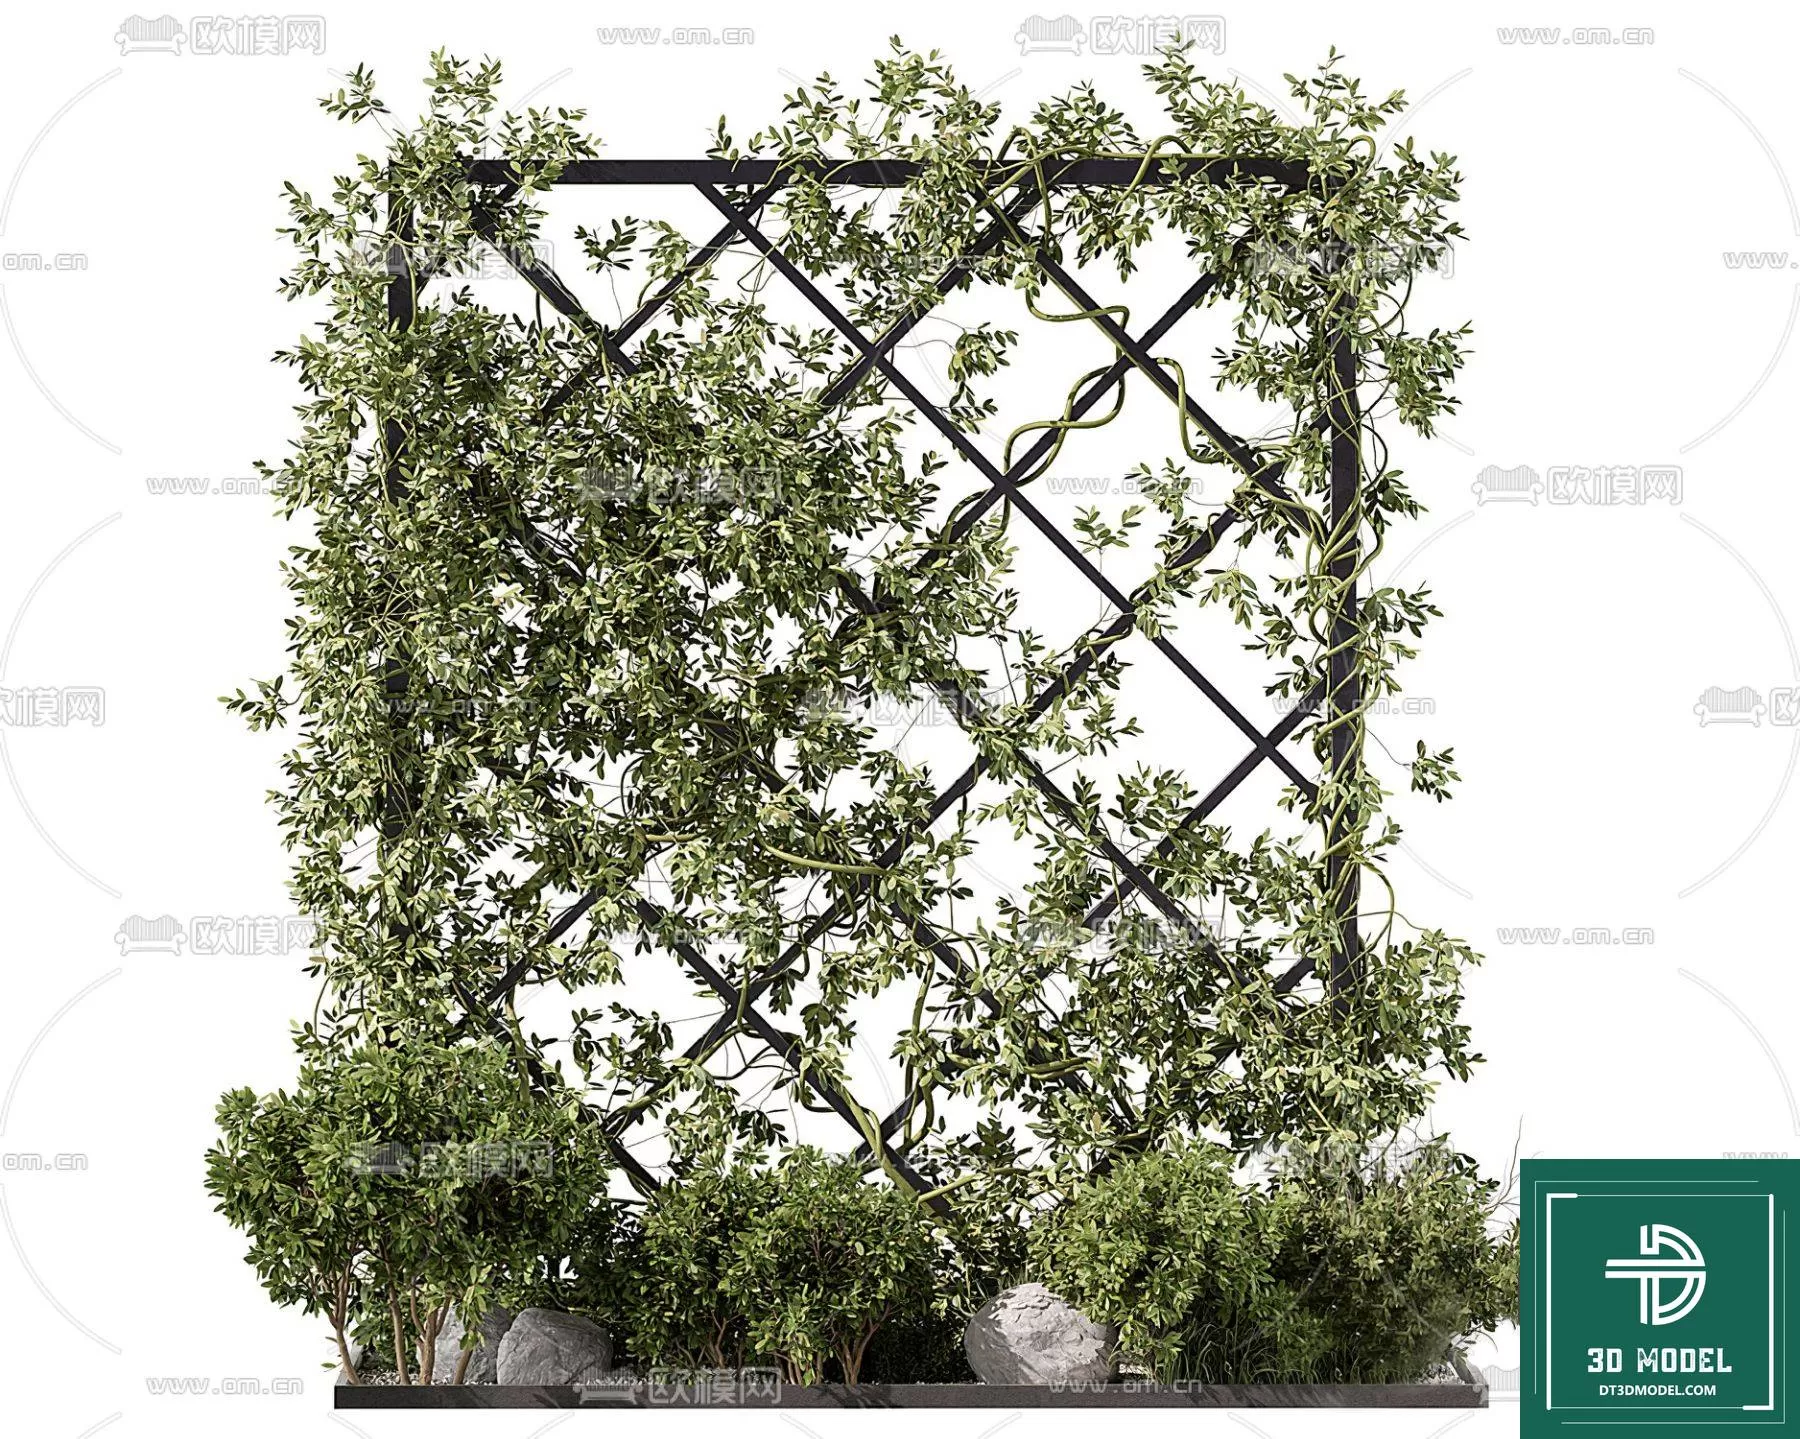 VERTICAL GARDEN – FITOWALL PLANT 3D MODEL – 172